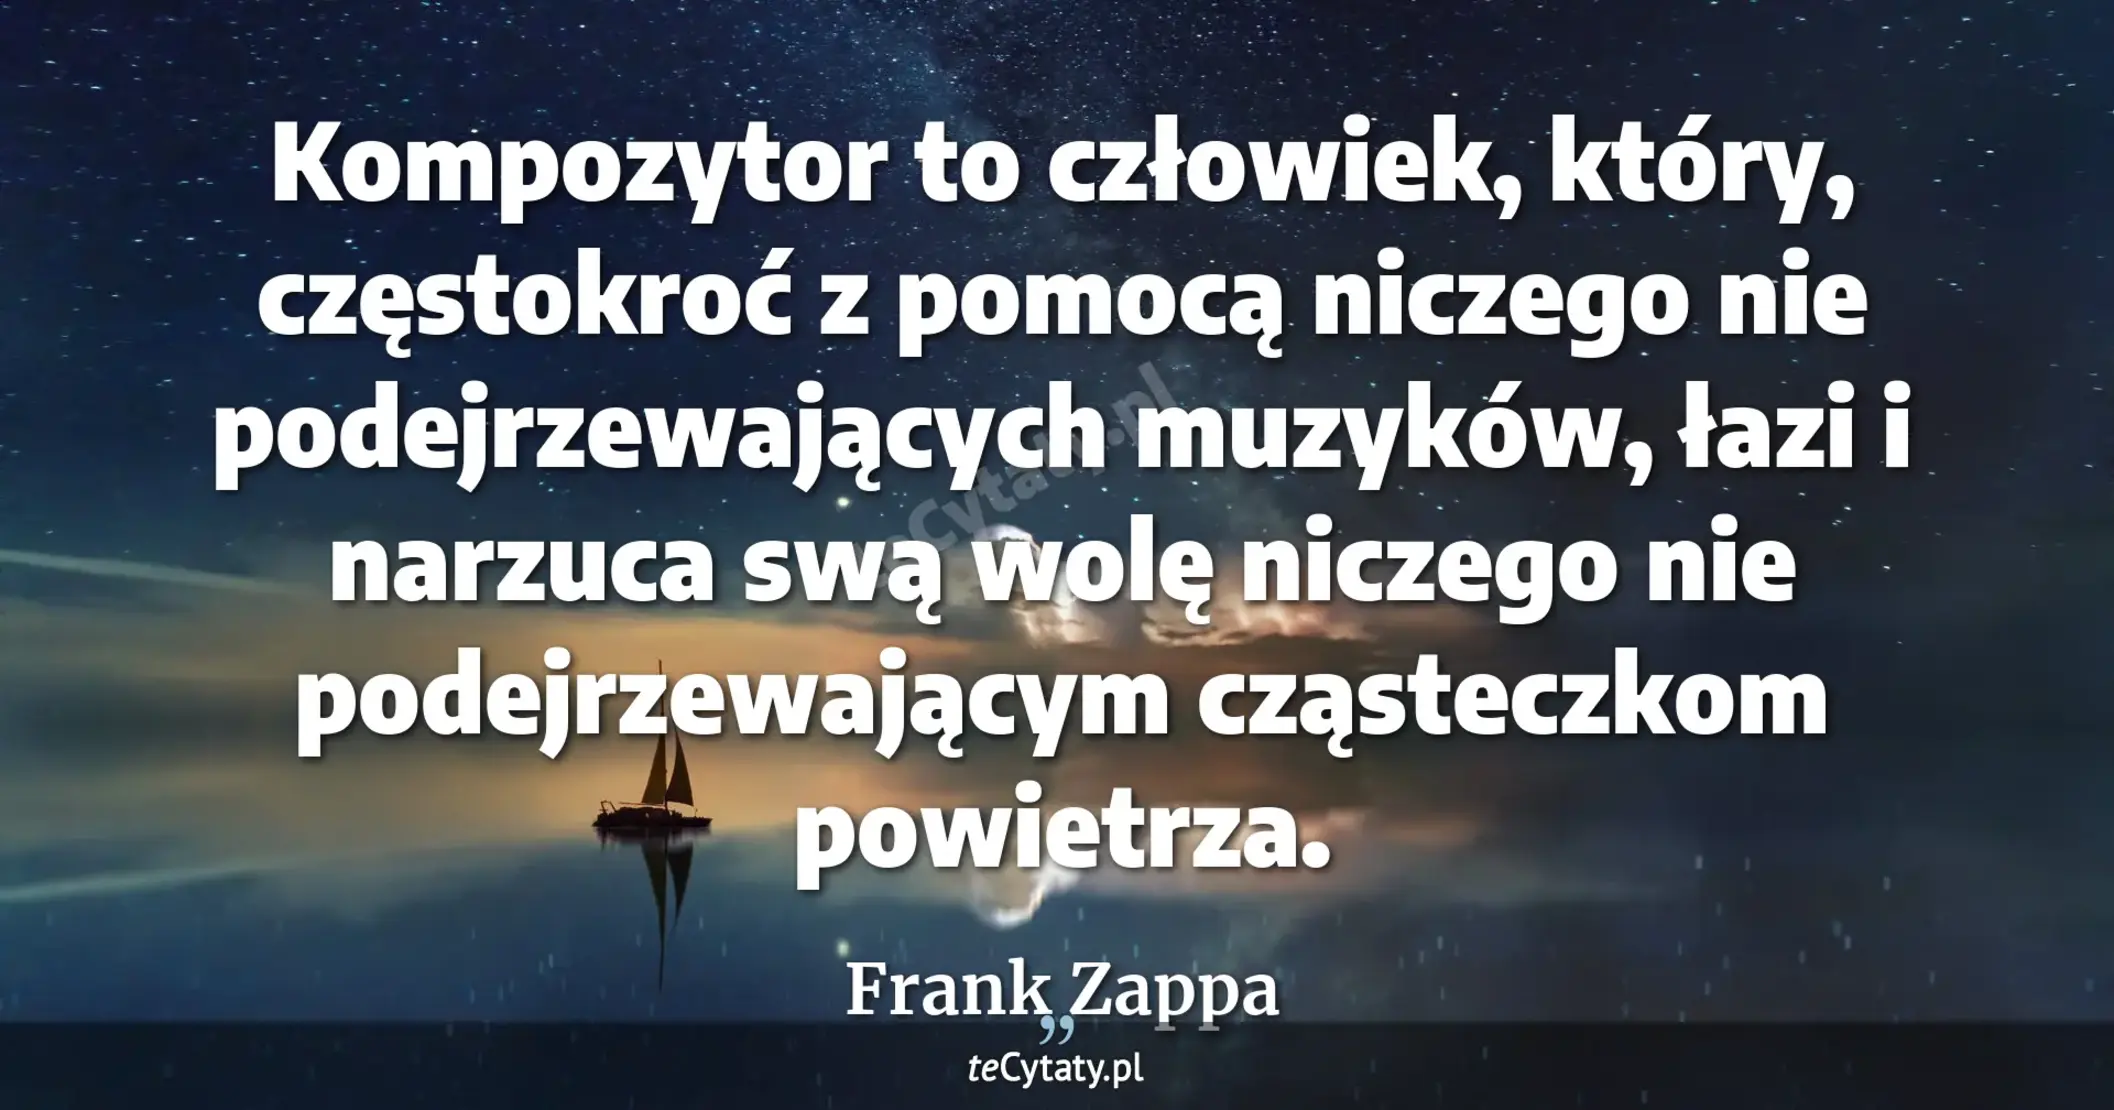 Kompozytor to człowiek, który, częstokroć z pomocą niczego nie podejrzewających muzyków, łazi i narzuca swą wolę niczego nie podejrzewającym cząsteczkom powietrza. - Frank Zappa